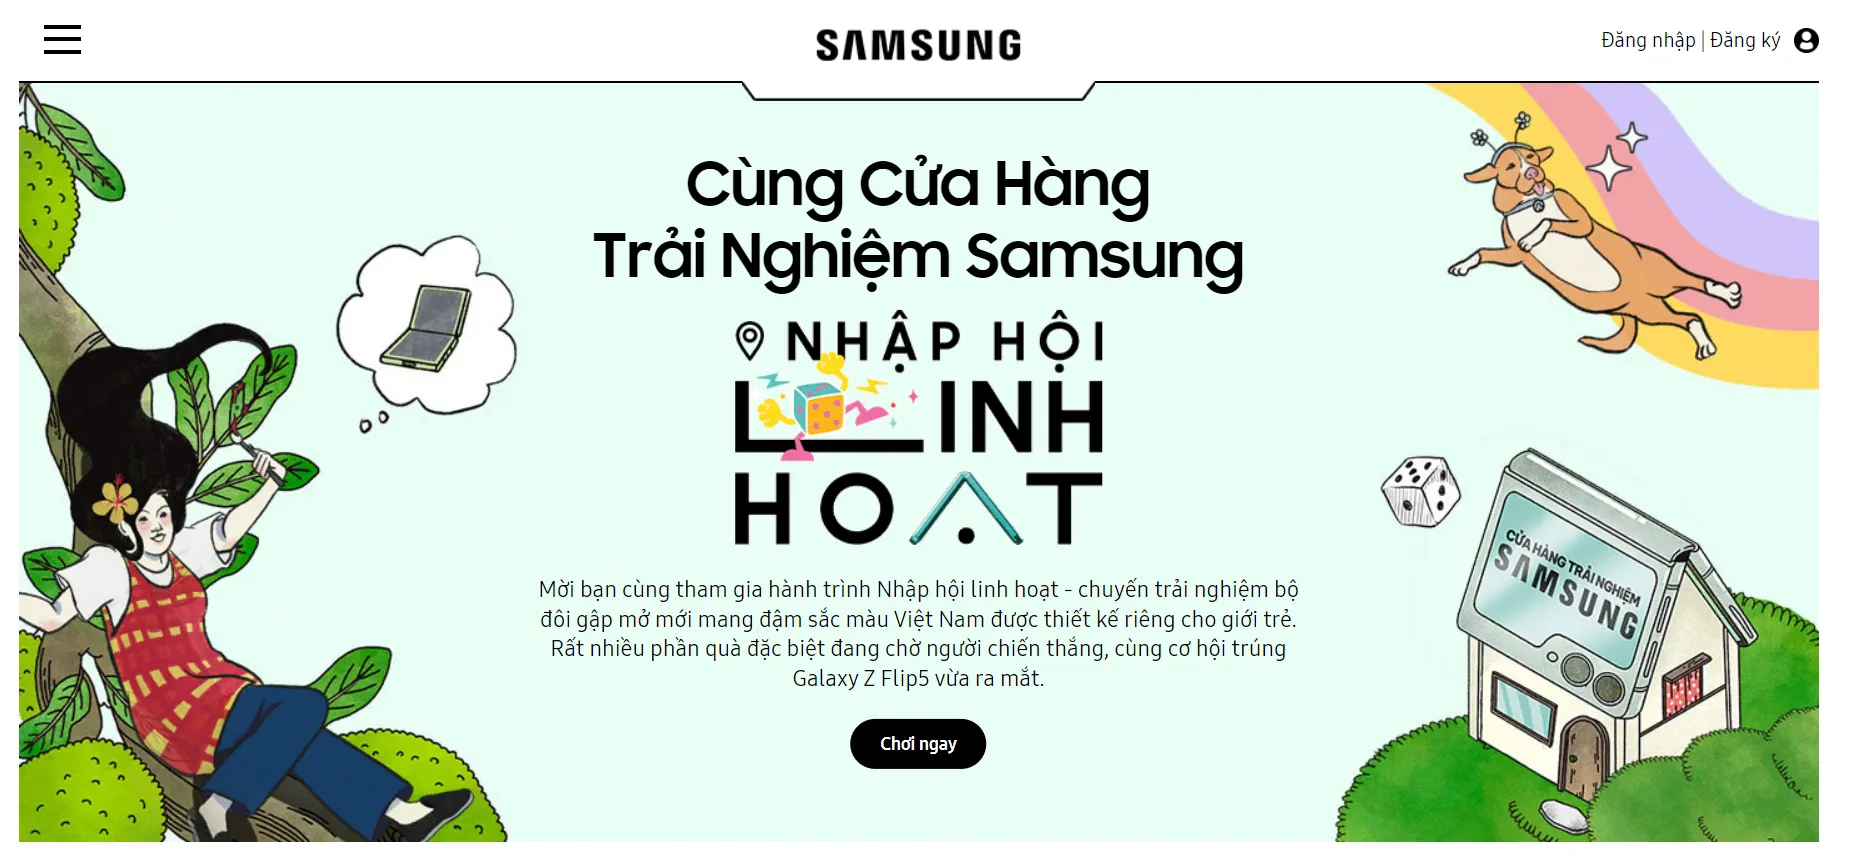 Samsung mời bạn ‘Nhập Hội Linh Hoạt’ từ khắp các Cửa Hàng Trải Nghiệm Samsung trên toàn quốc